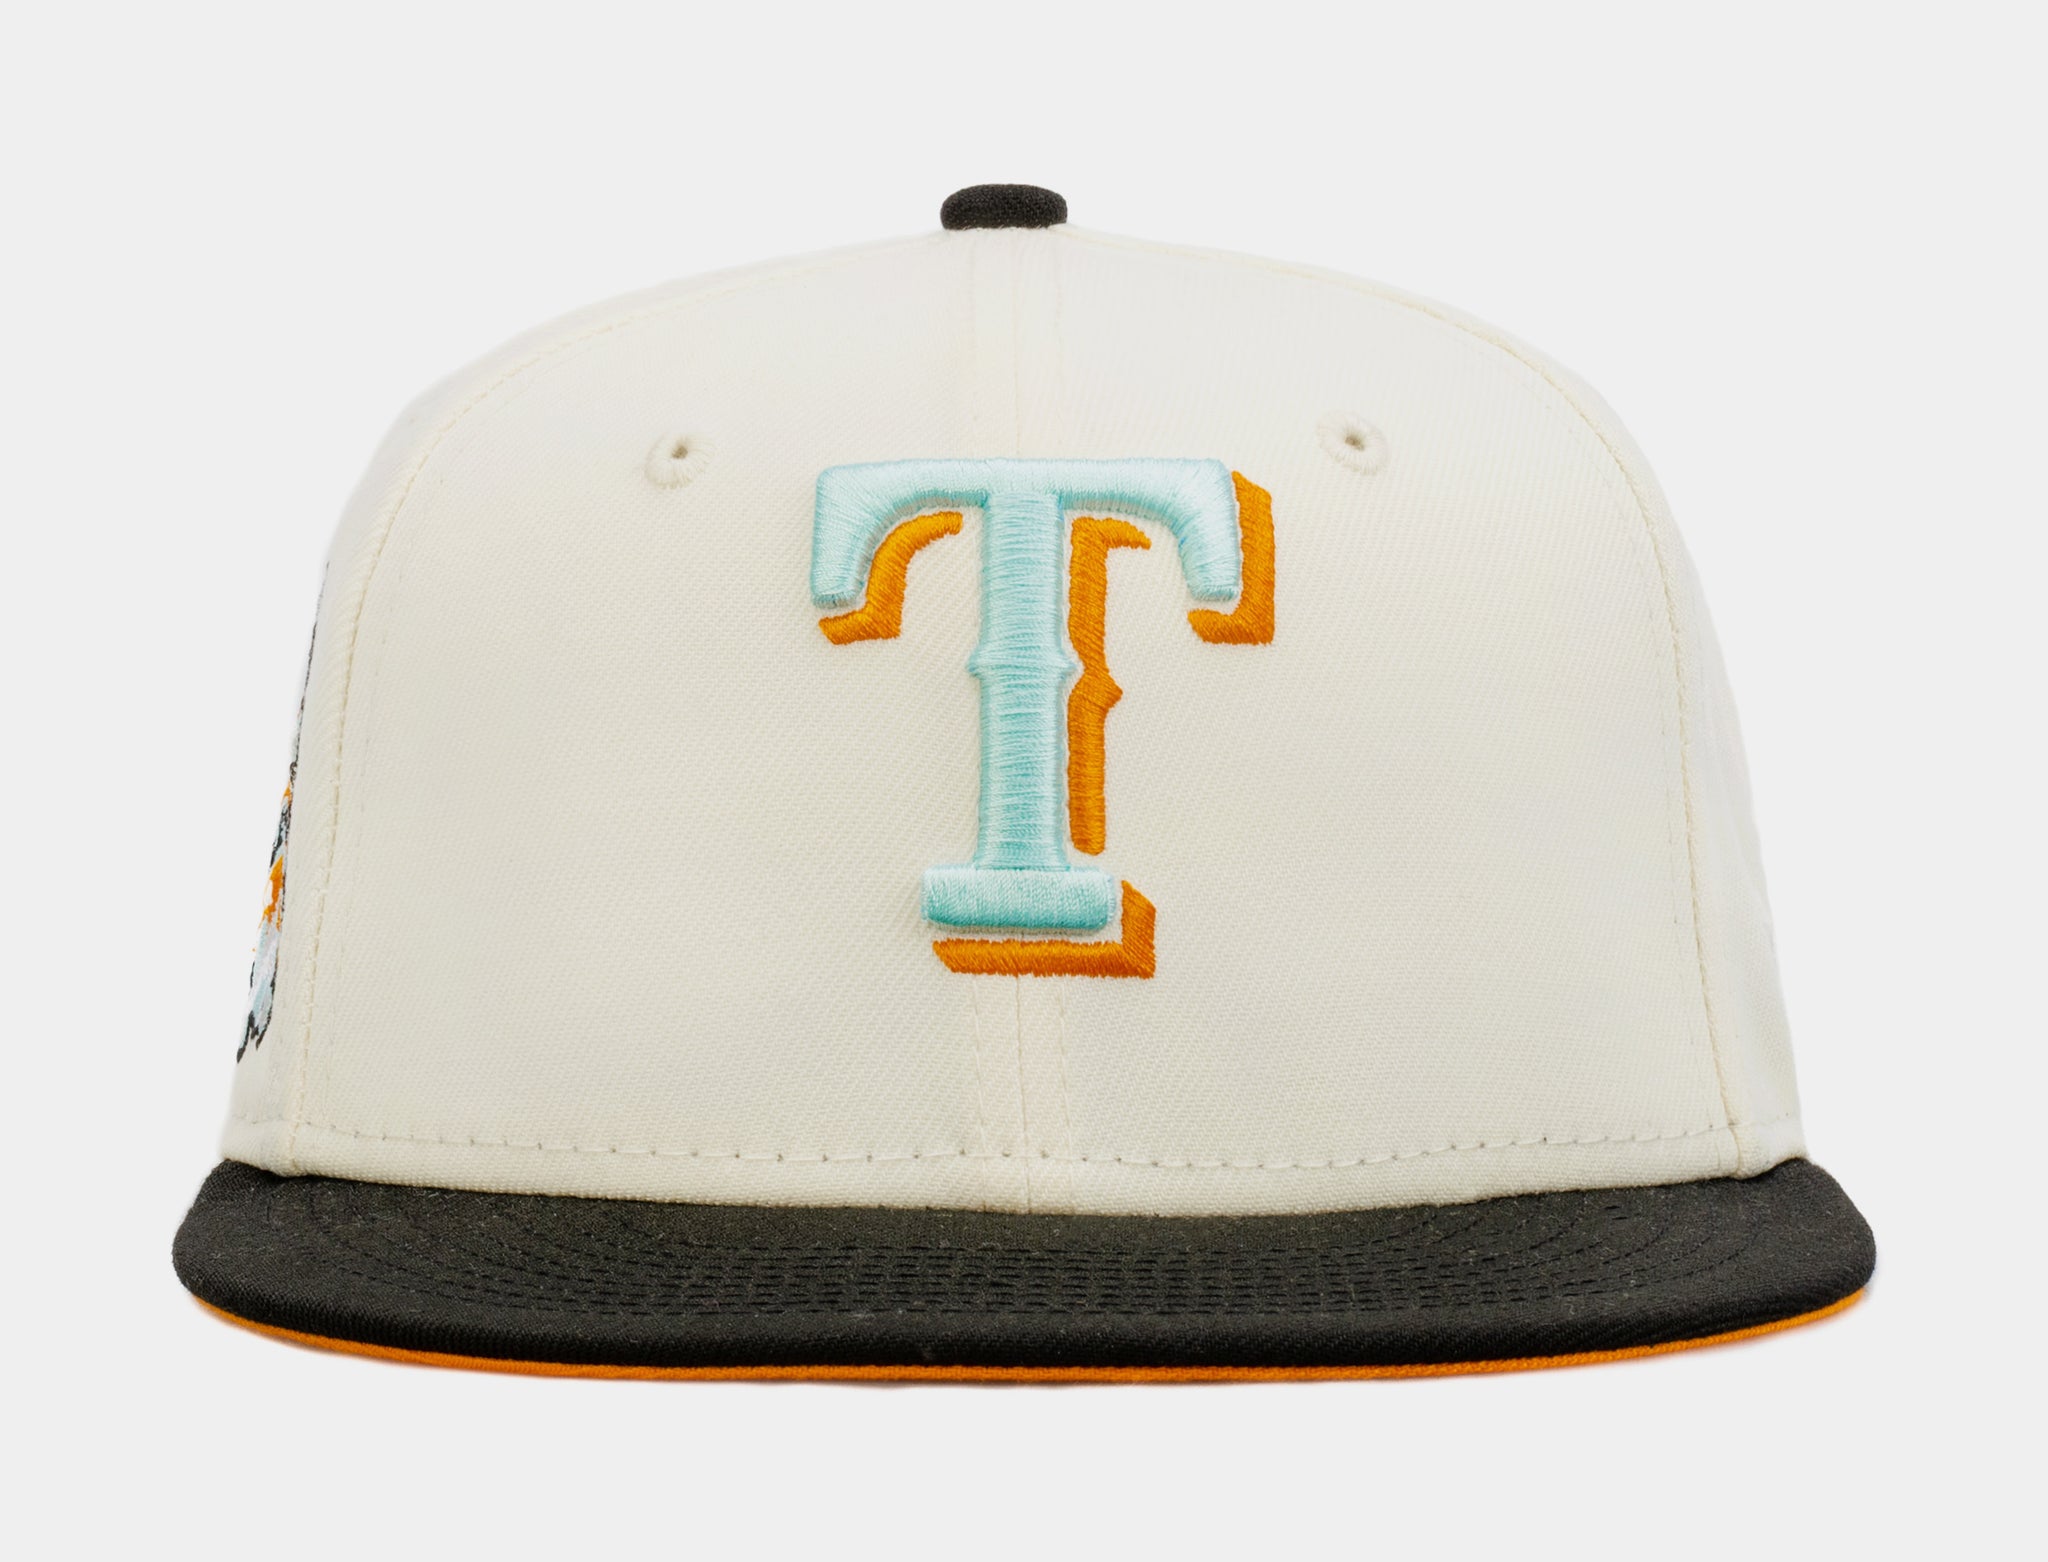 new era hats texas rangers